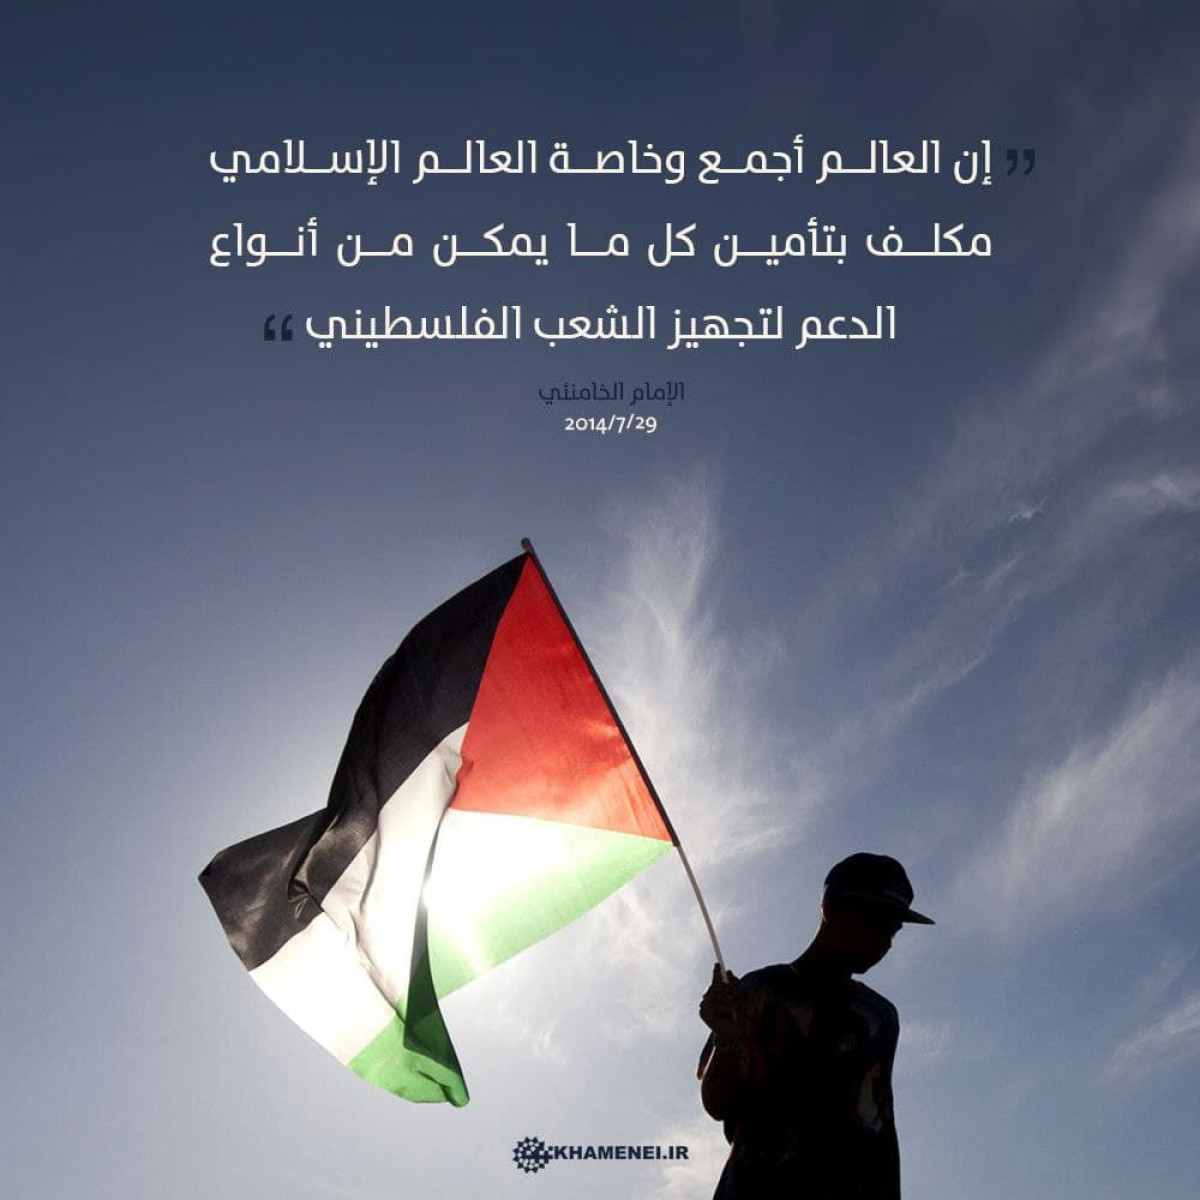 إن العالم أجمع مكلف بتأمين ودعم الشعب الفلسطيني